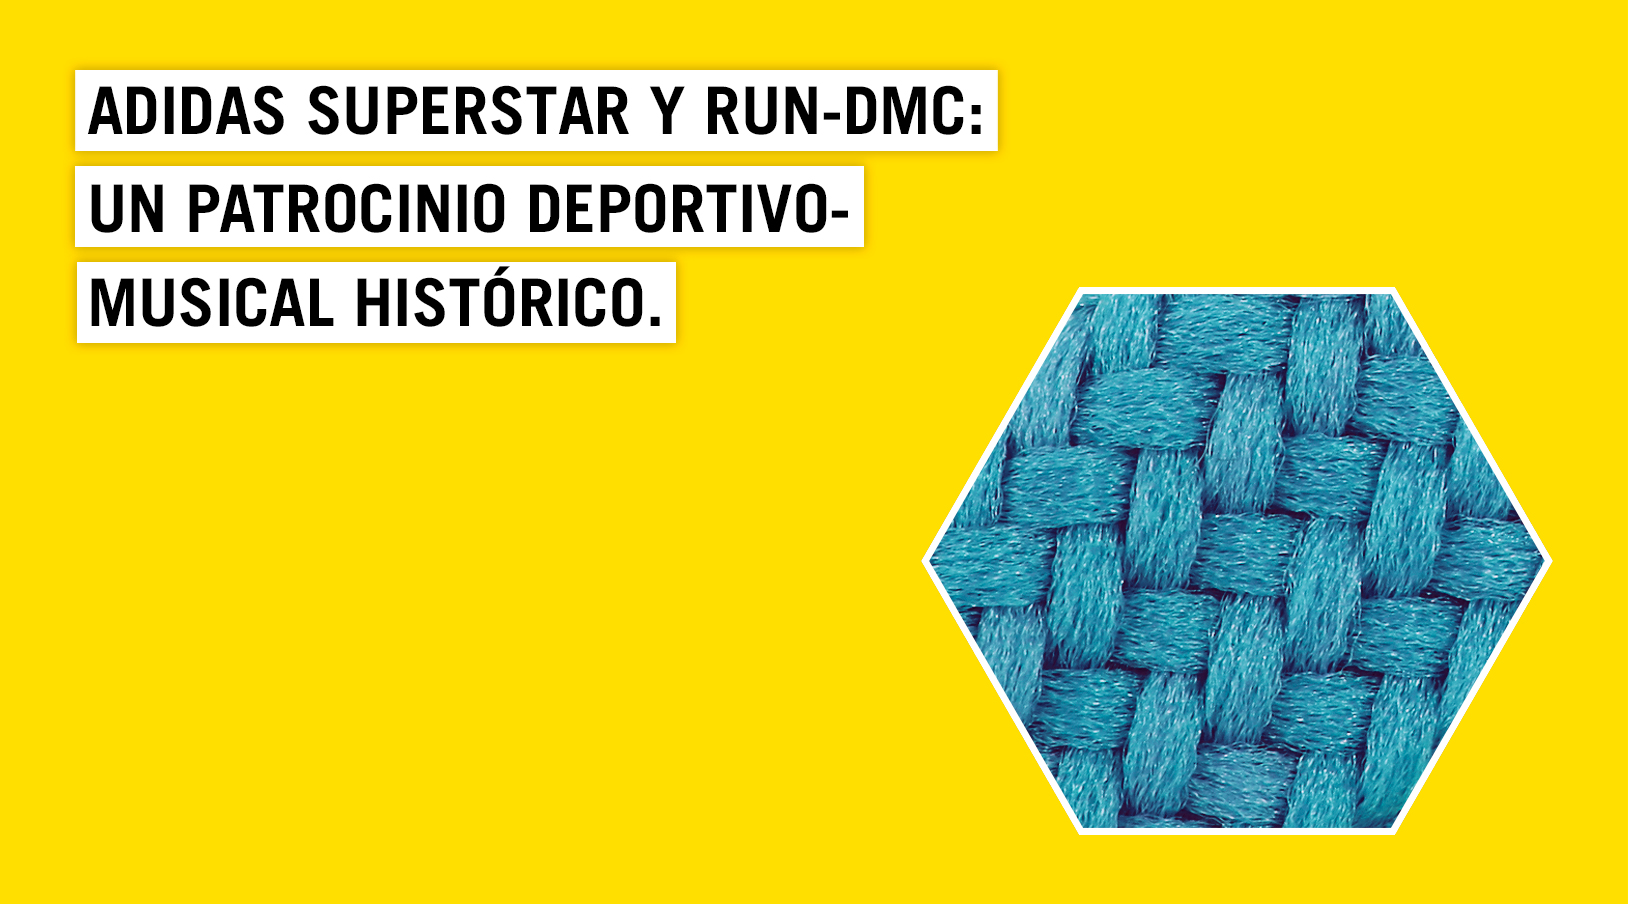 gráfico huella La ciudad Adidas Superstar y RUN-DMC: El primer patrocinio deportivo-musical | Blog  Empresas